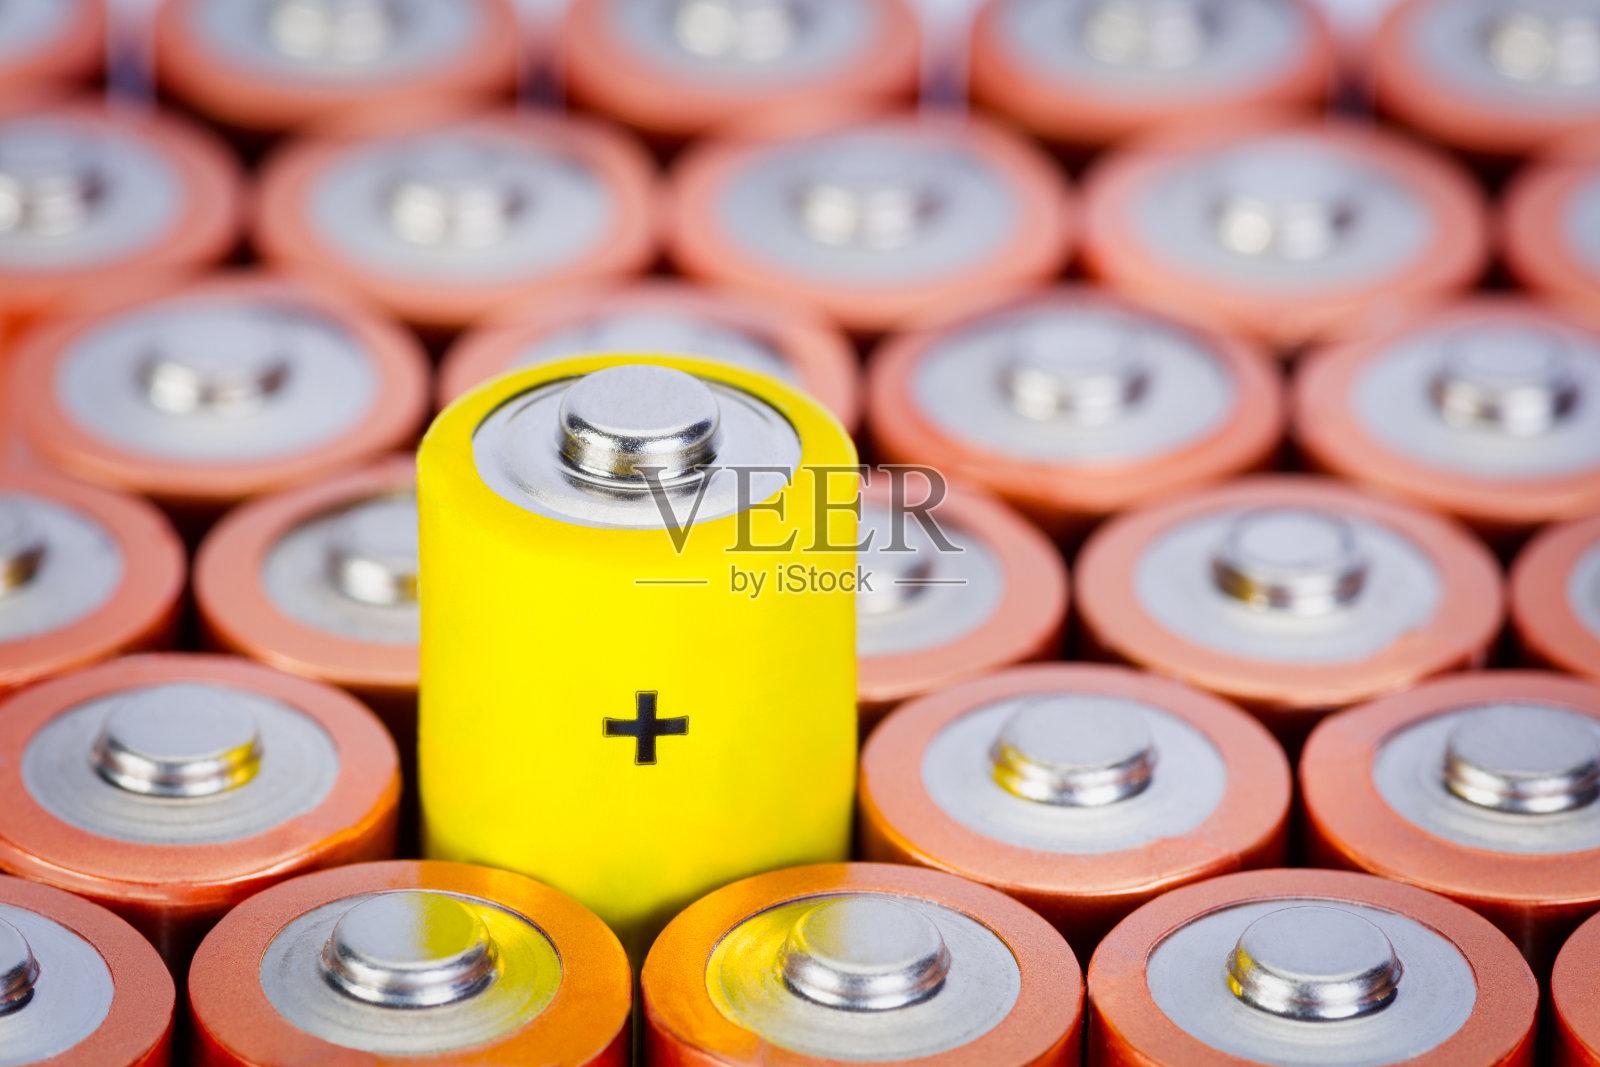 碱性电池AA大小，有选择性的关注单电池照片摄影图片